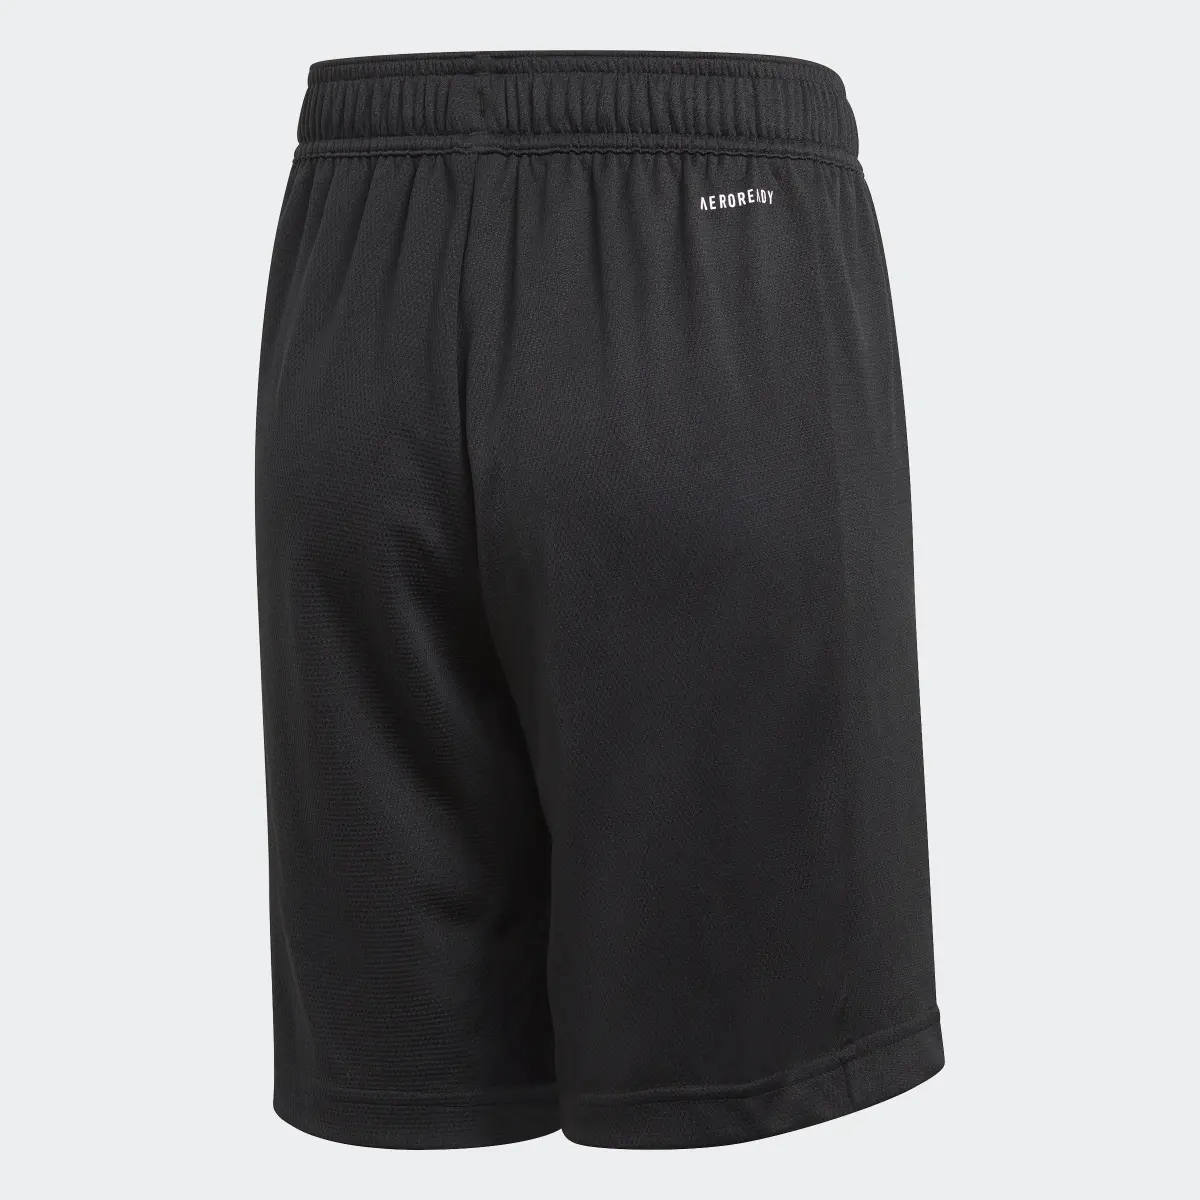 Adidas AEROREADY Shorts. 2